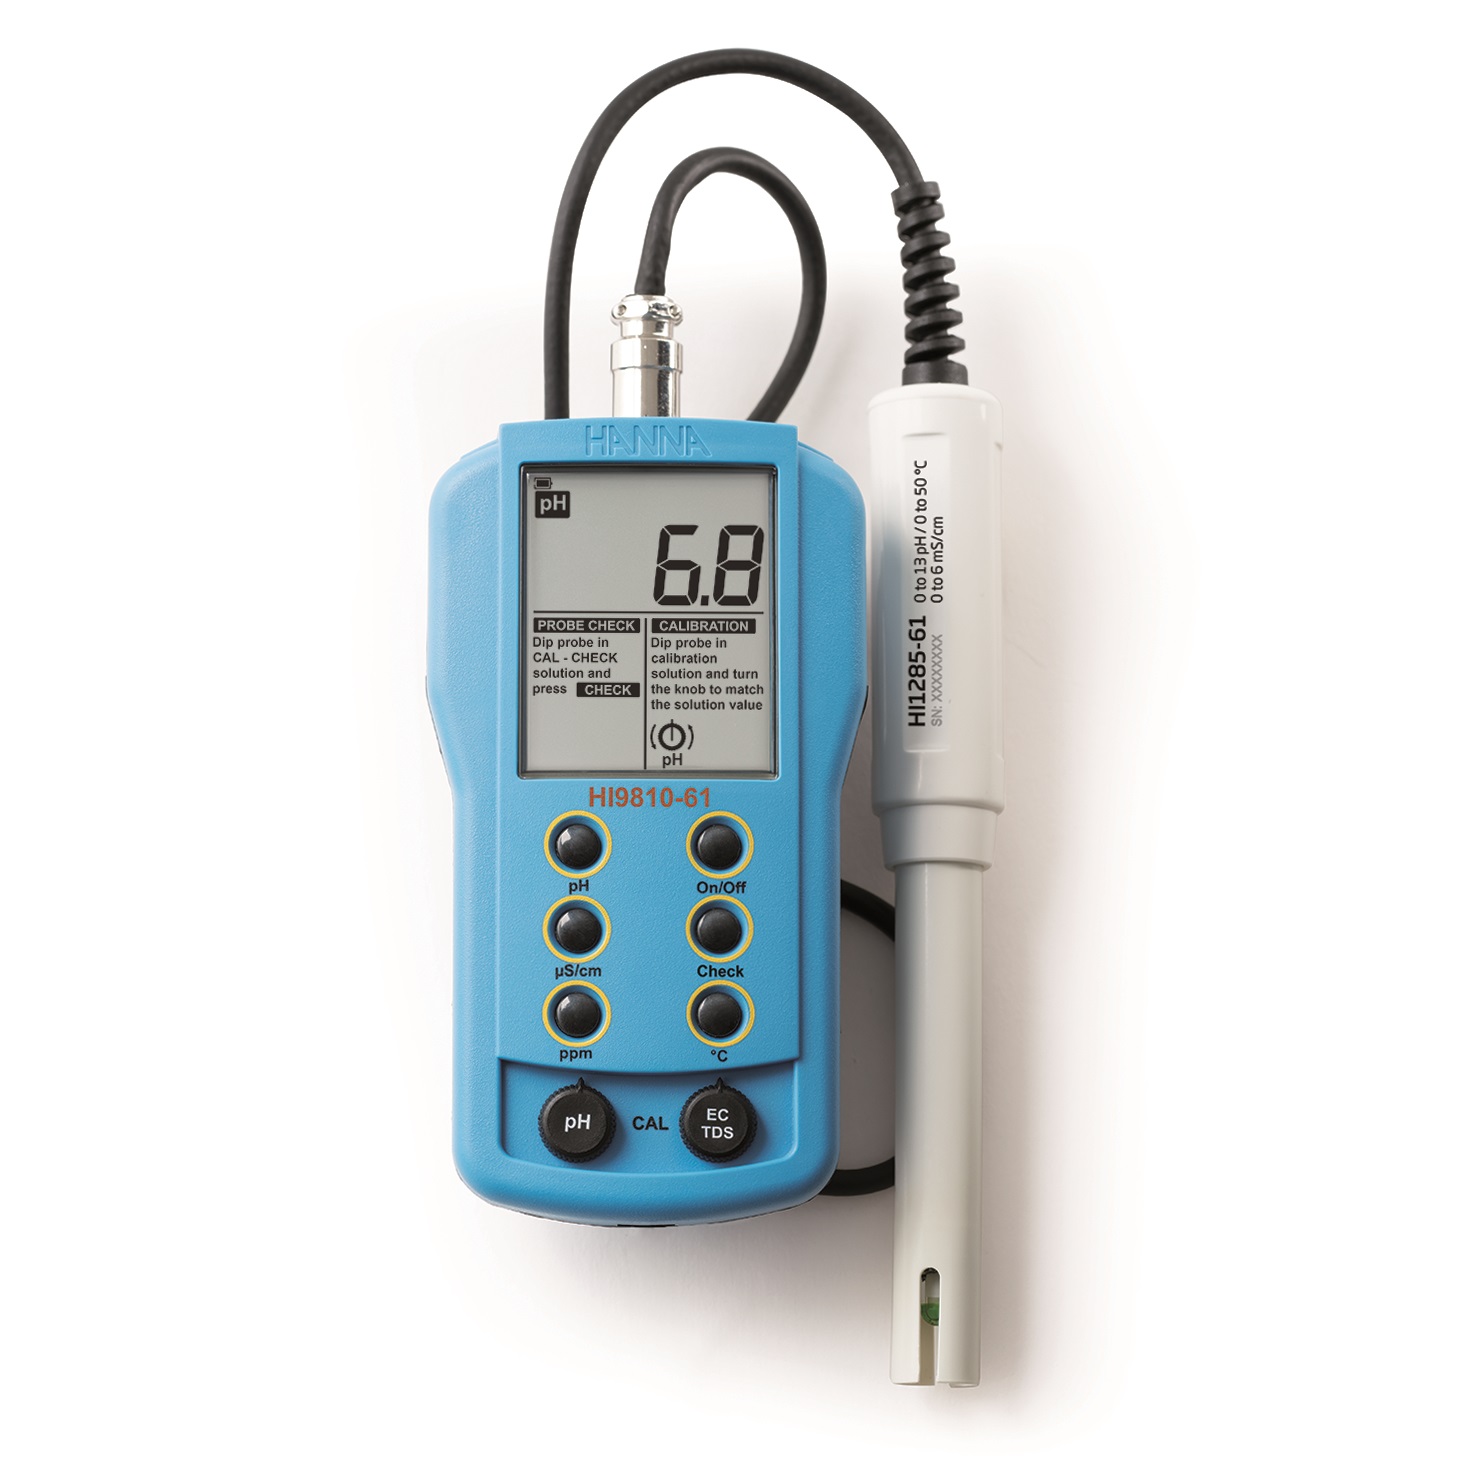 Portable pH/EC/TDS Meter – HI9810-61